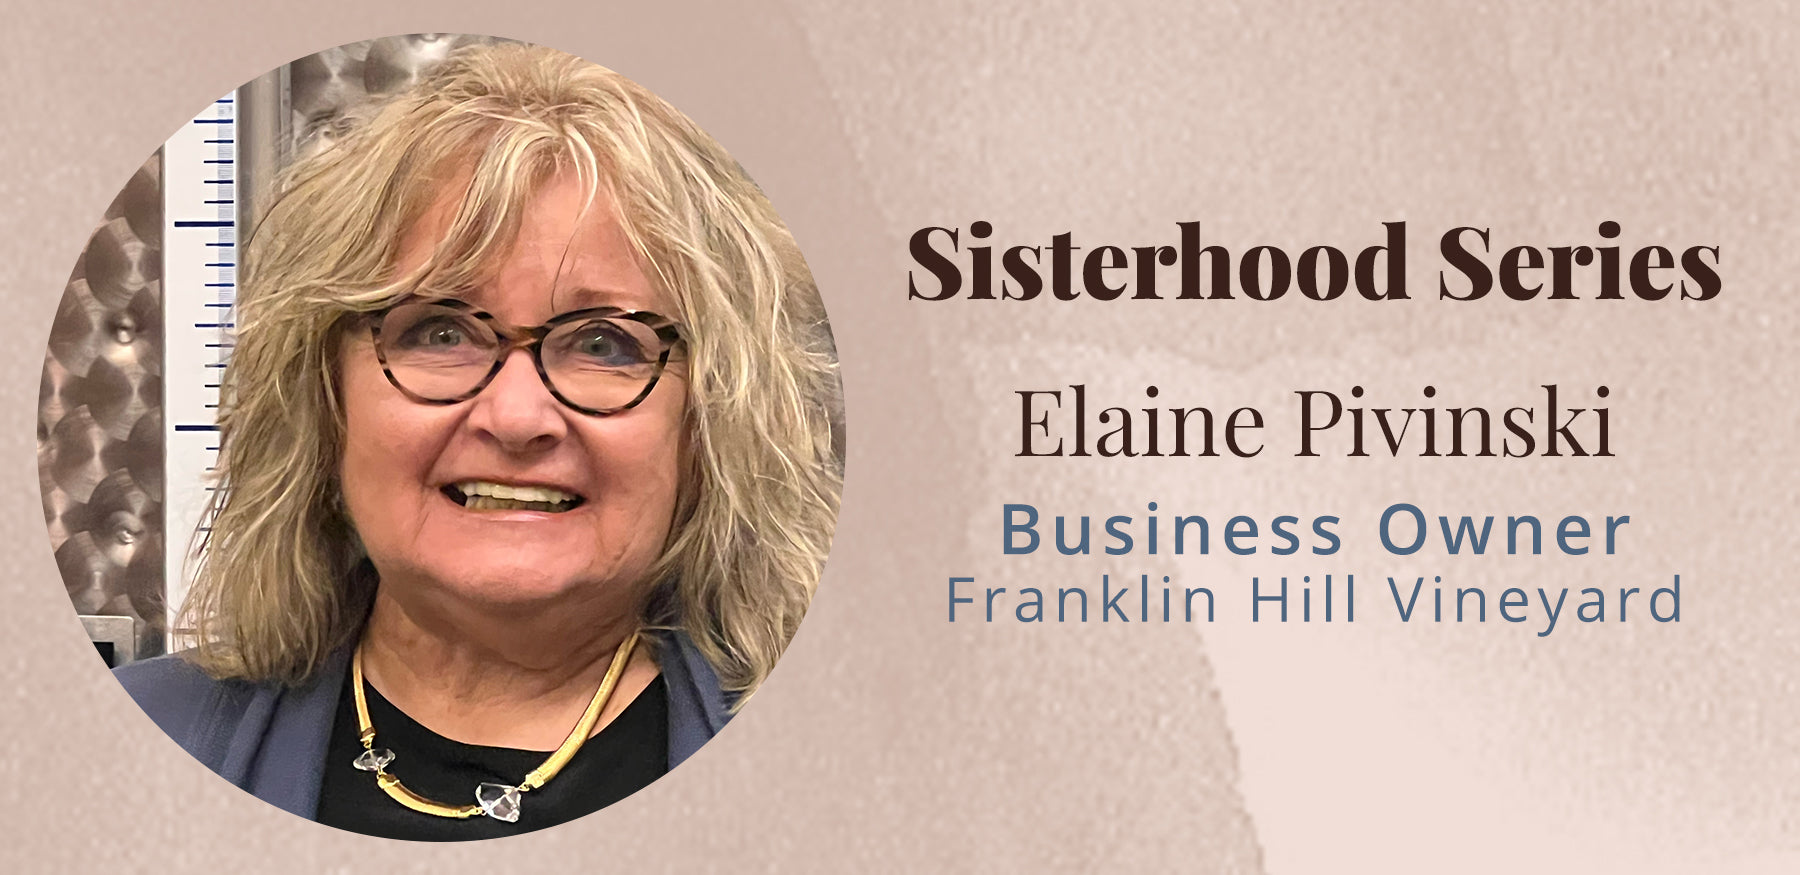 Sisterhood Series with Elaine Pivinski